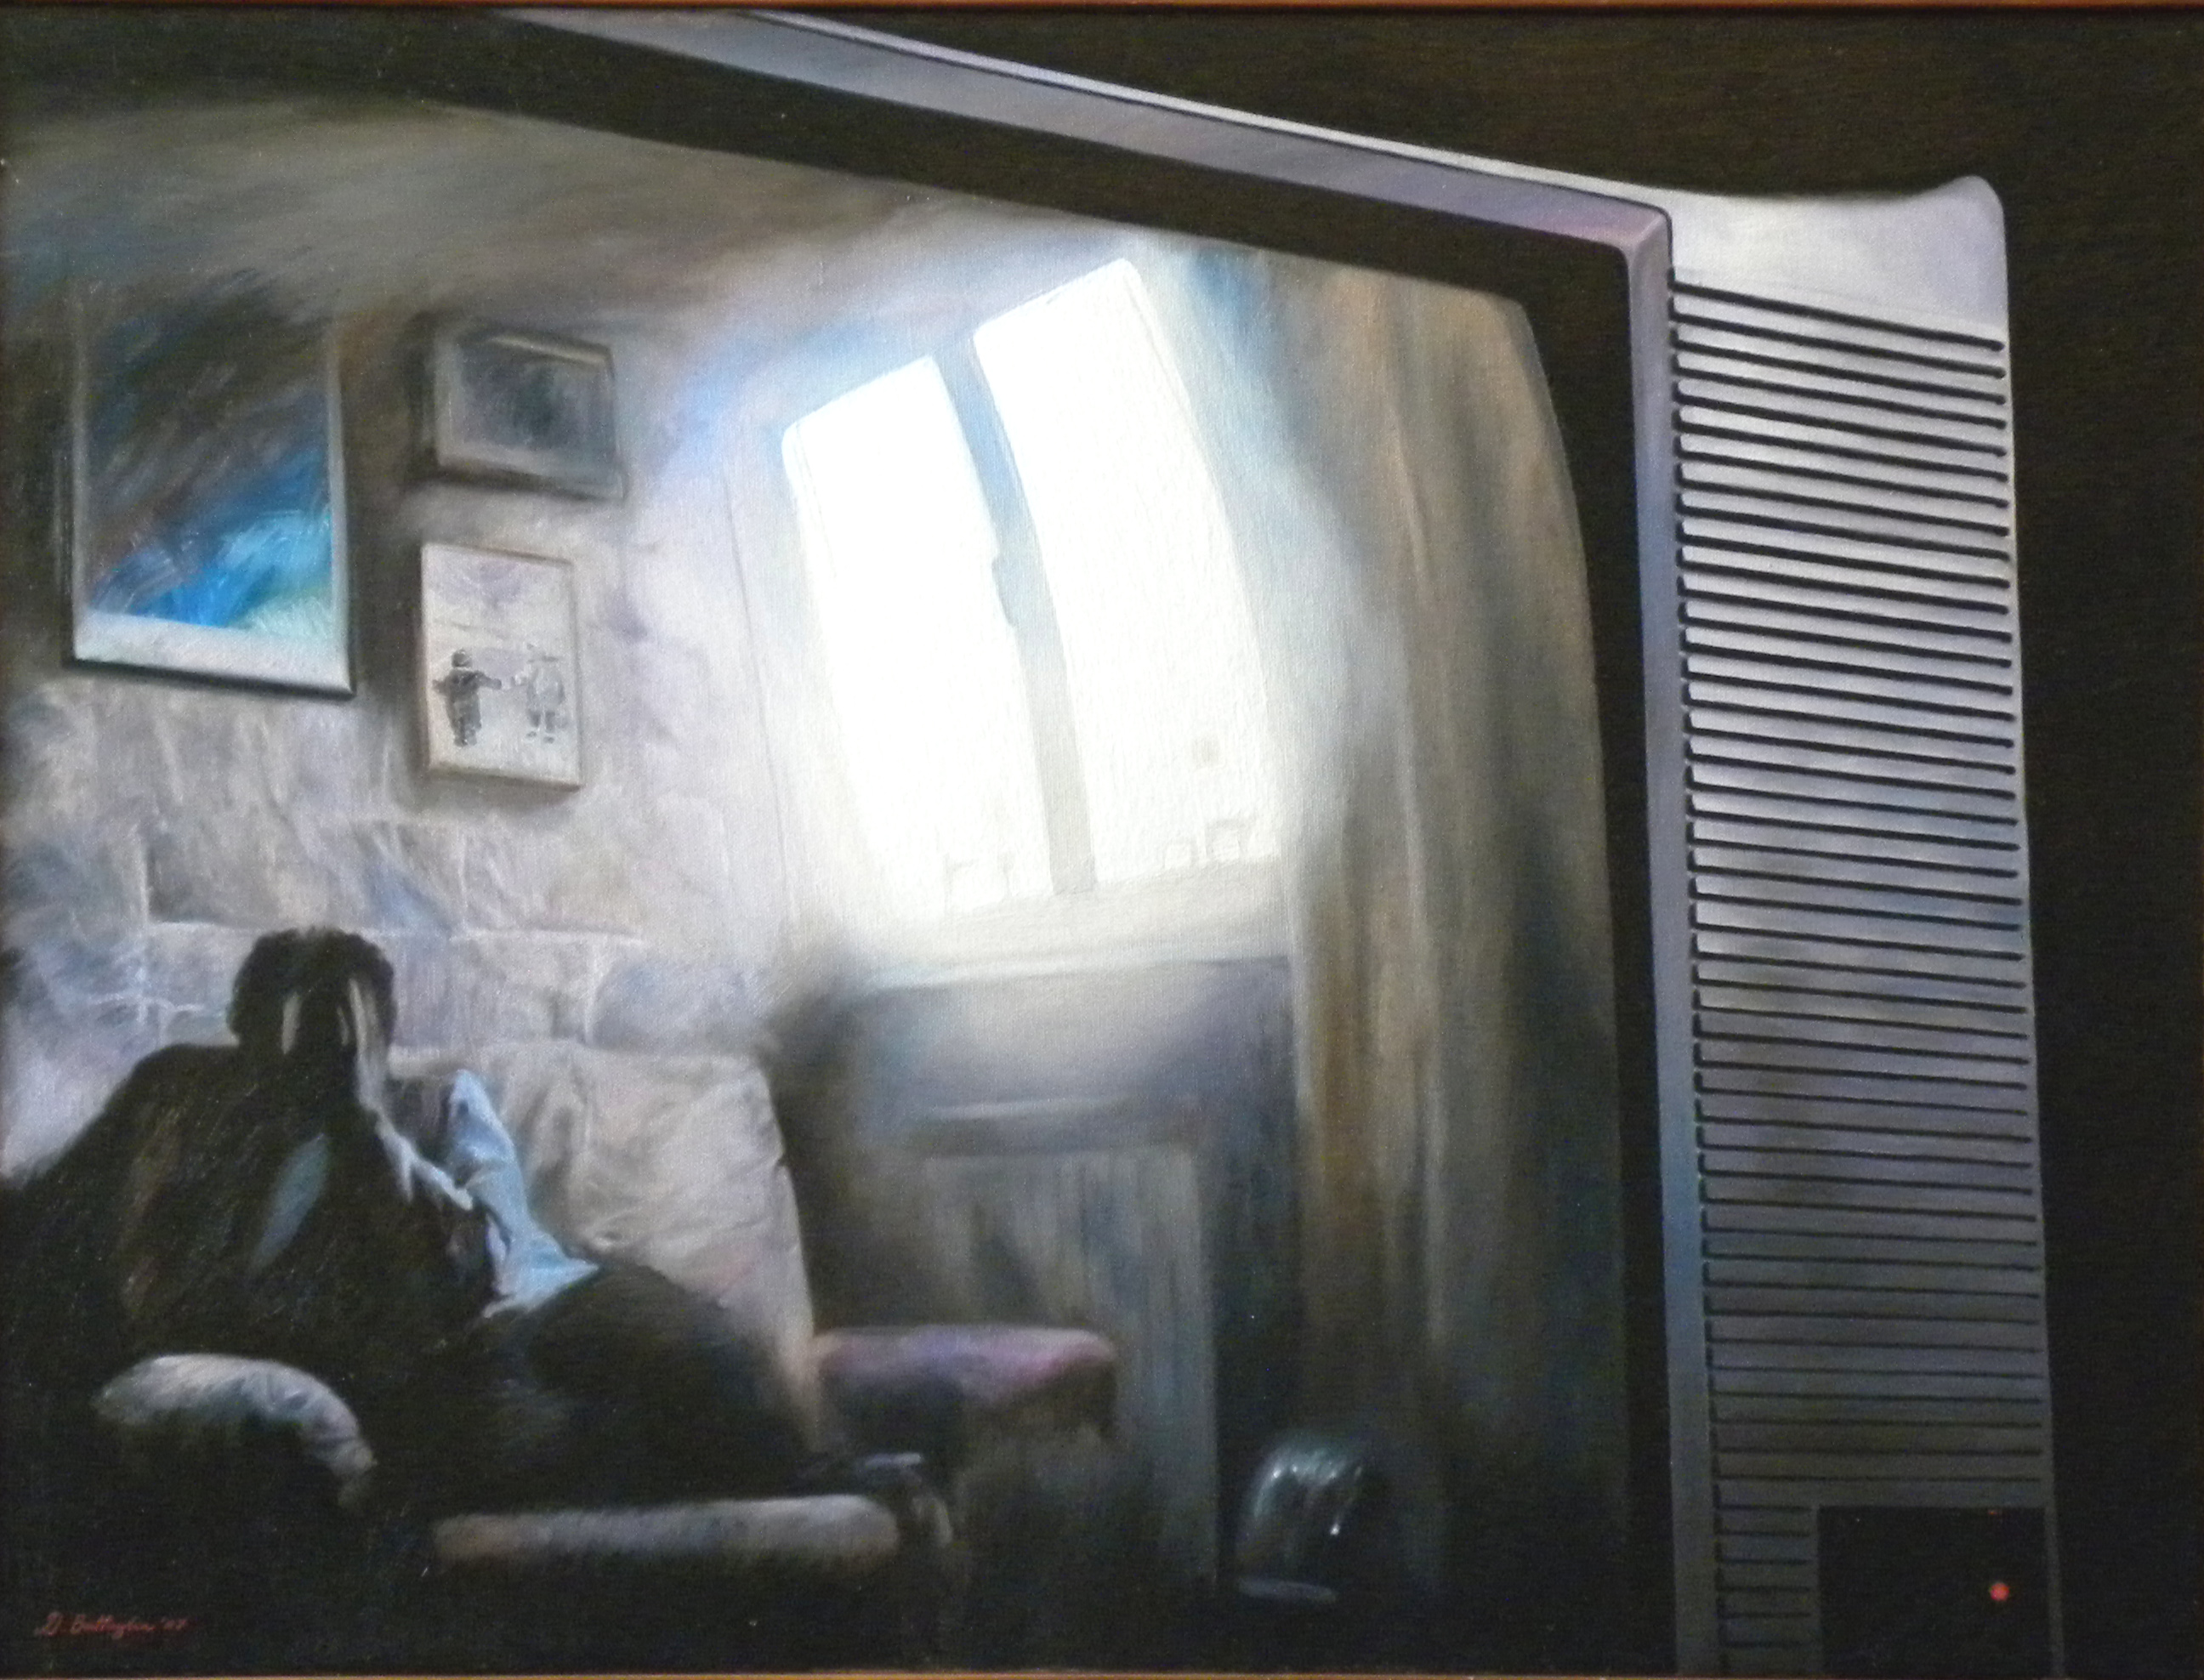 
'Reality' 
(2007), 
óleo sobre lienzo 
60x80 cm
